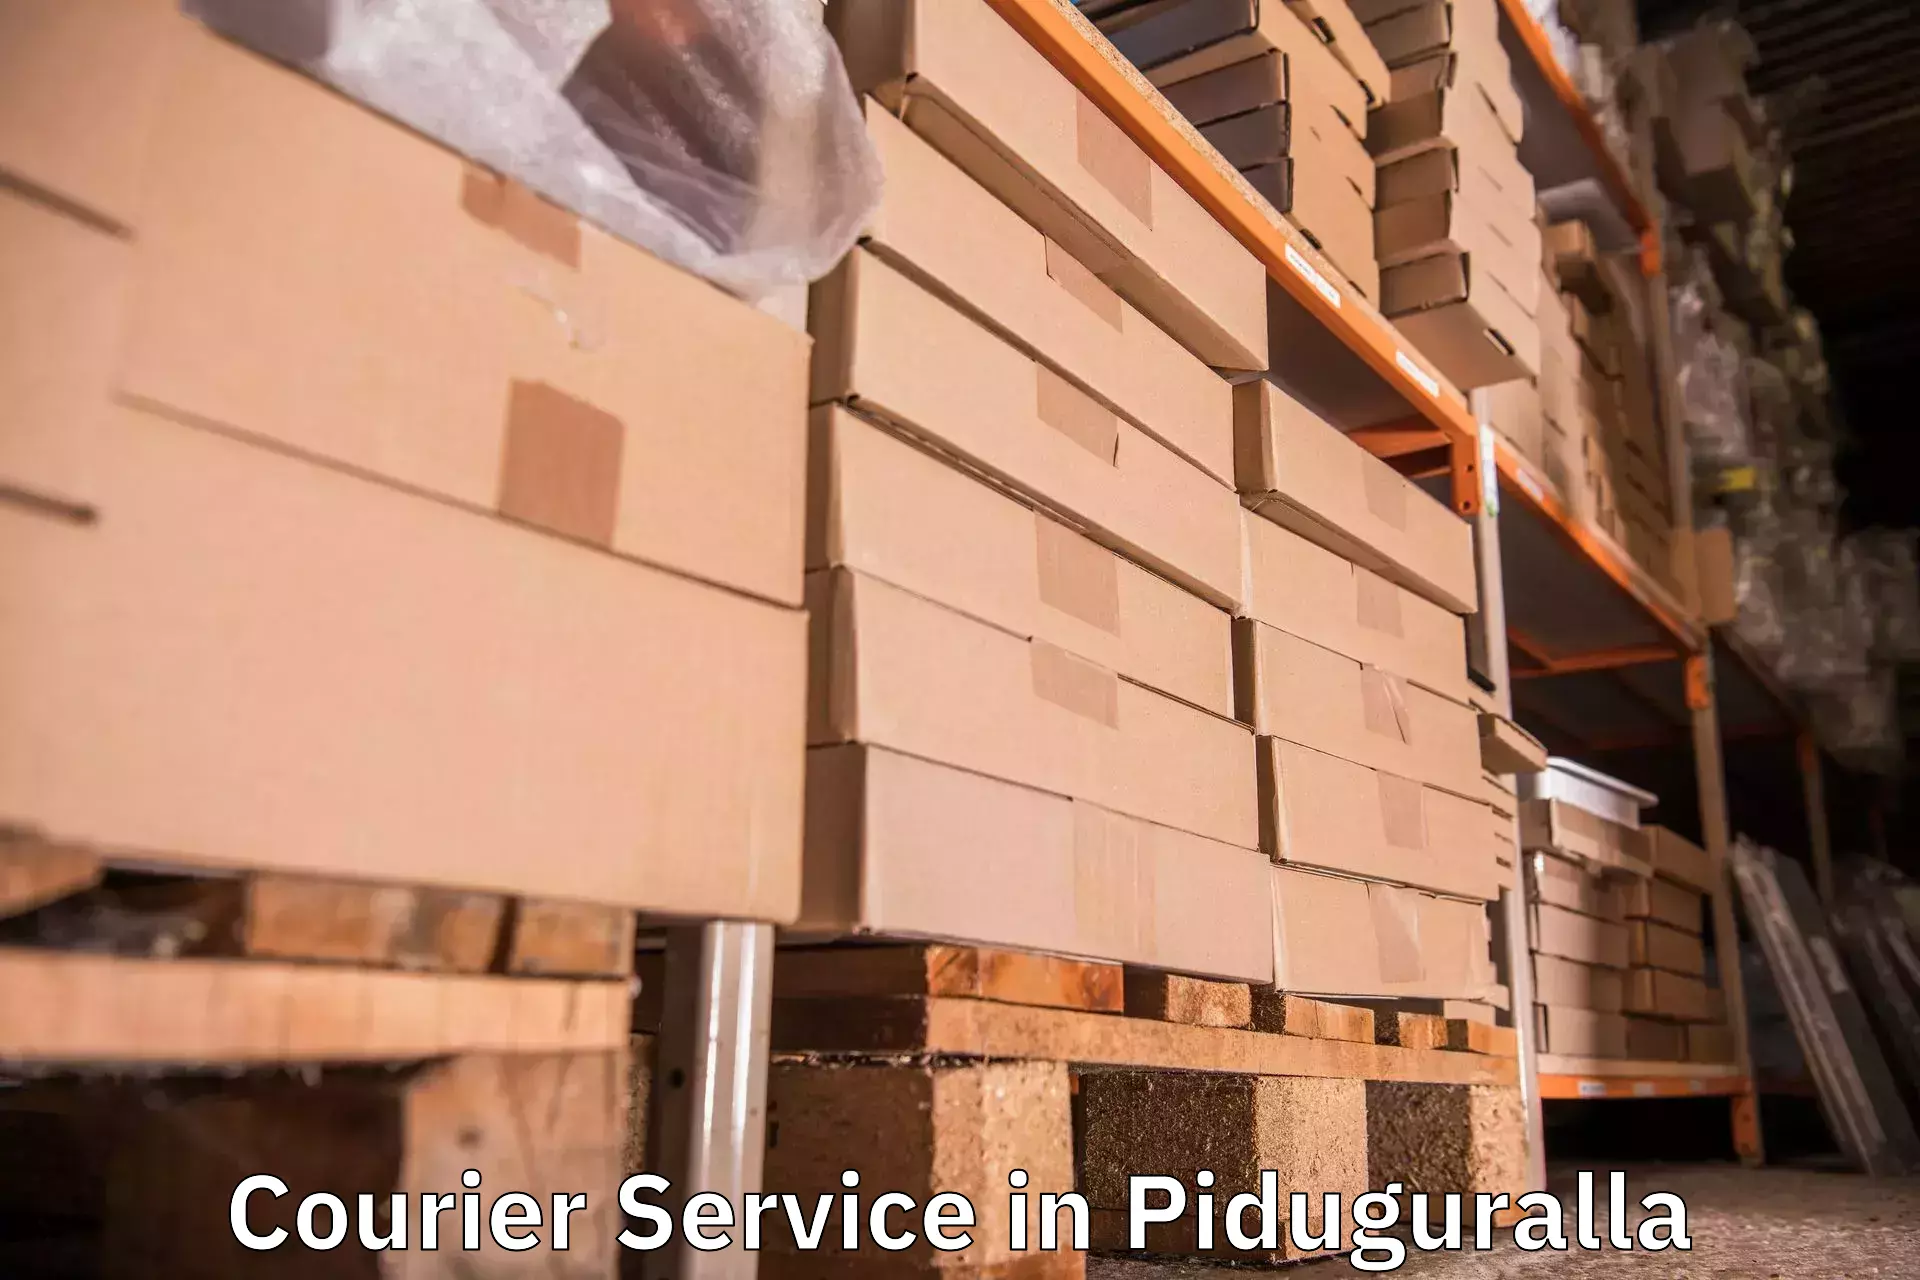 Overnight delivery services in Piduguralla